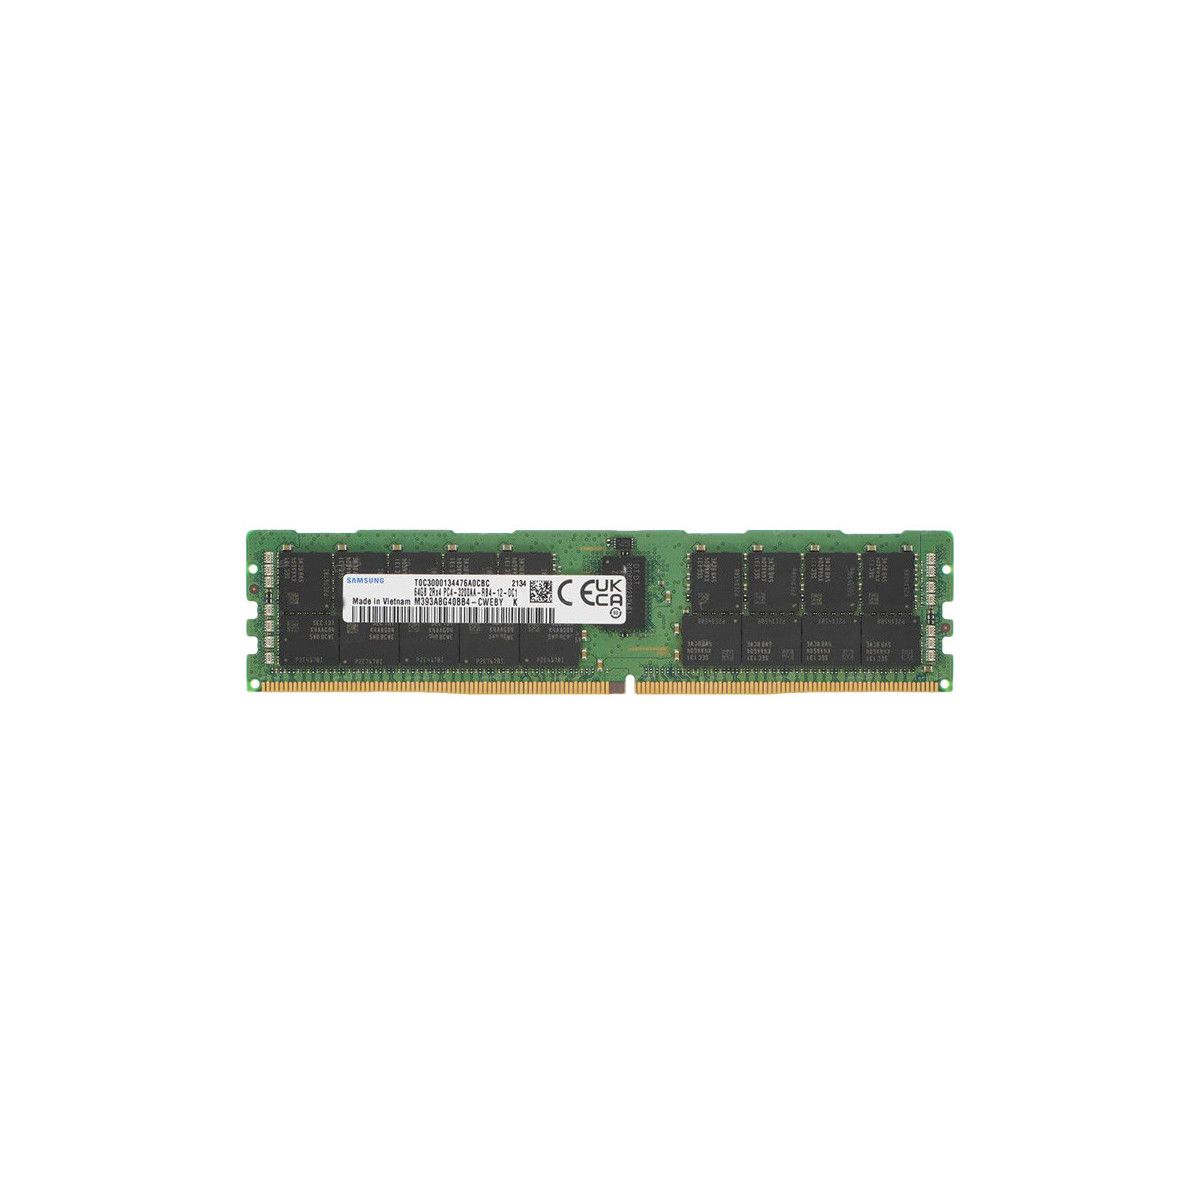 P2MYX-MS - Memstar 1x 64GB DDR4-3200 RDIMM PC4-25600R - Mem-Star compatibel OEM geheugen 1 - Memstar 